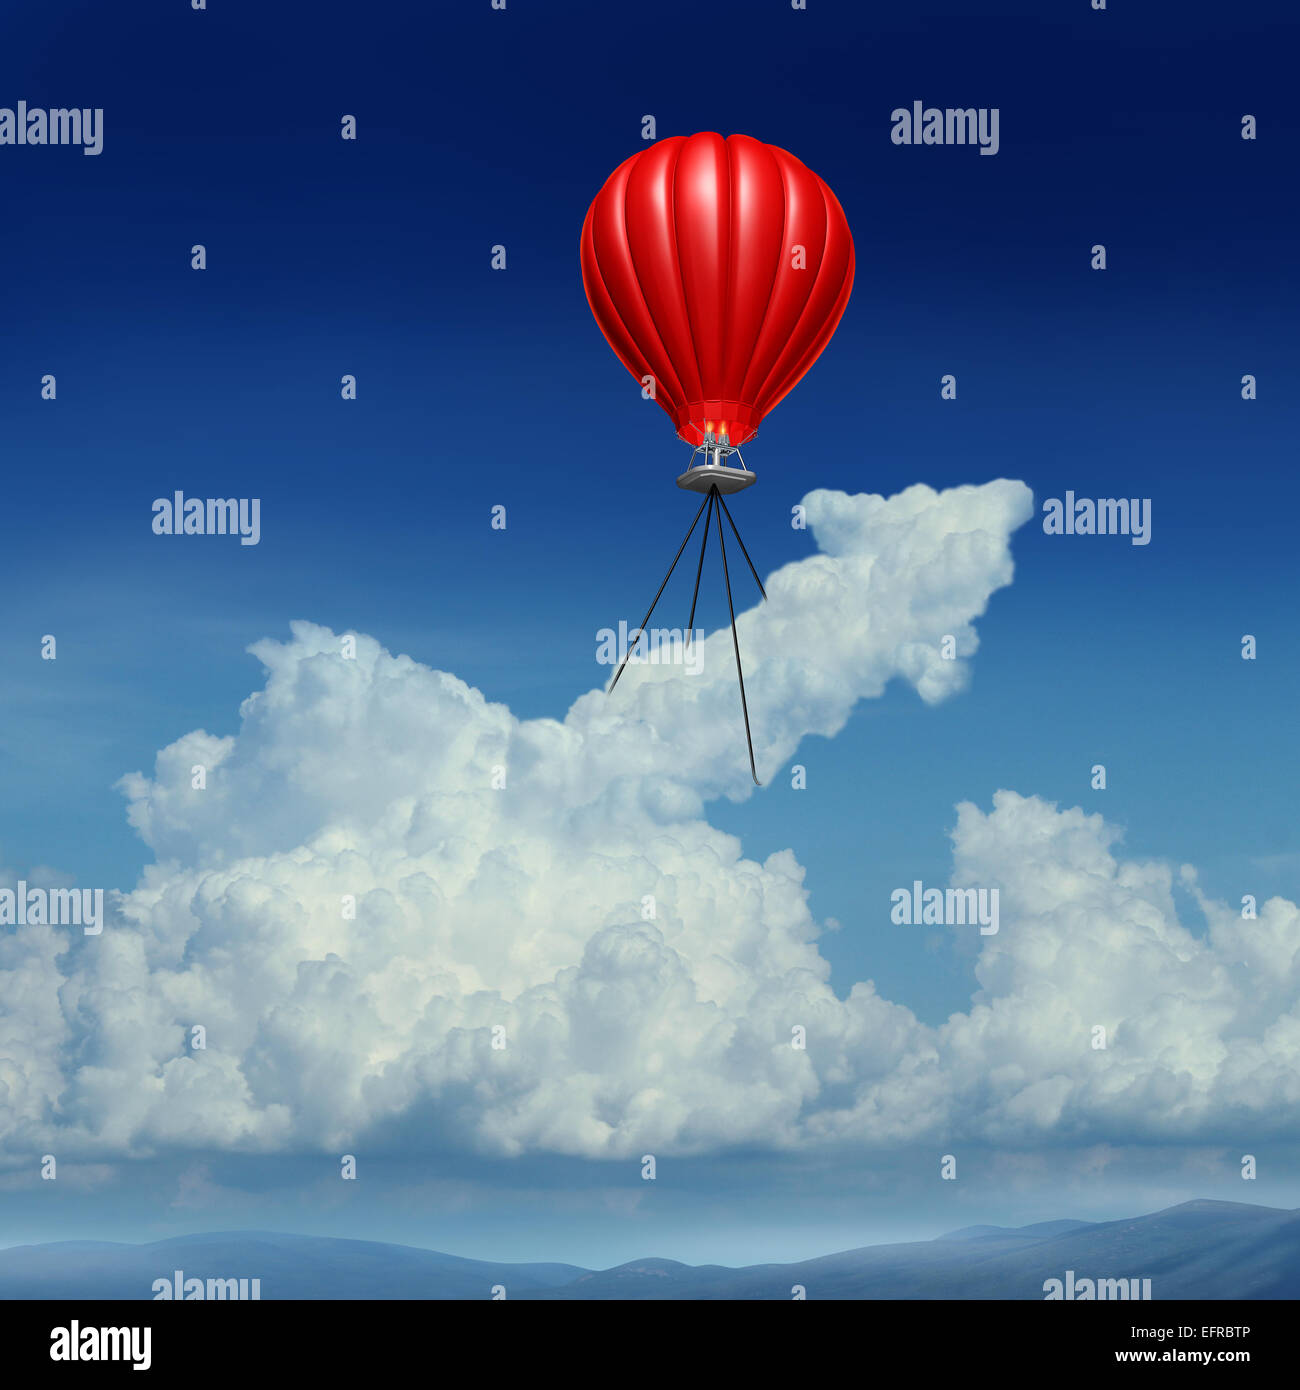 Ziel hohen Erfolg Geschäftskonzept als einem roten Heißluftballon eine Kumuluswolke geformt wie ein Pfeil Metapher für Acheivemrent Planung Andstrategy anheben. Stockfoto